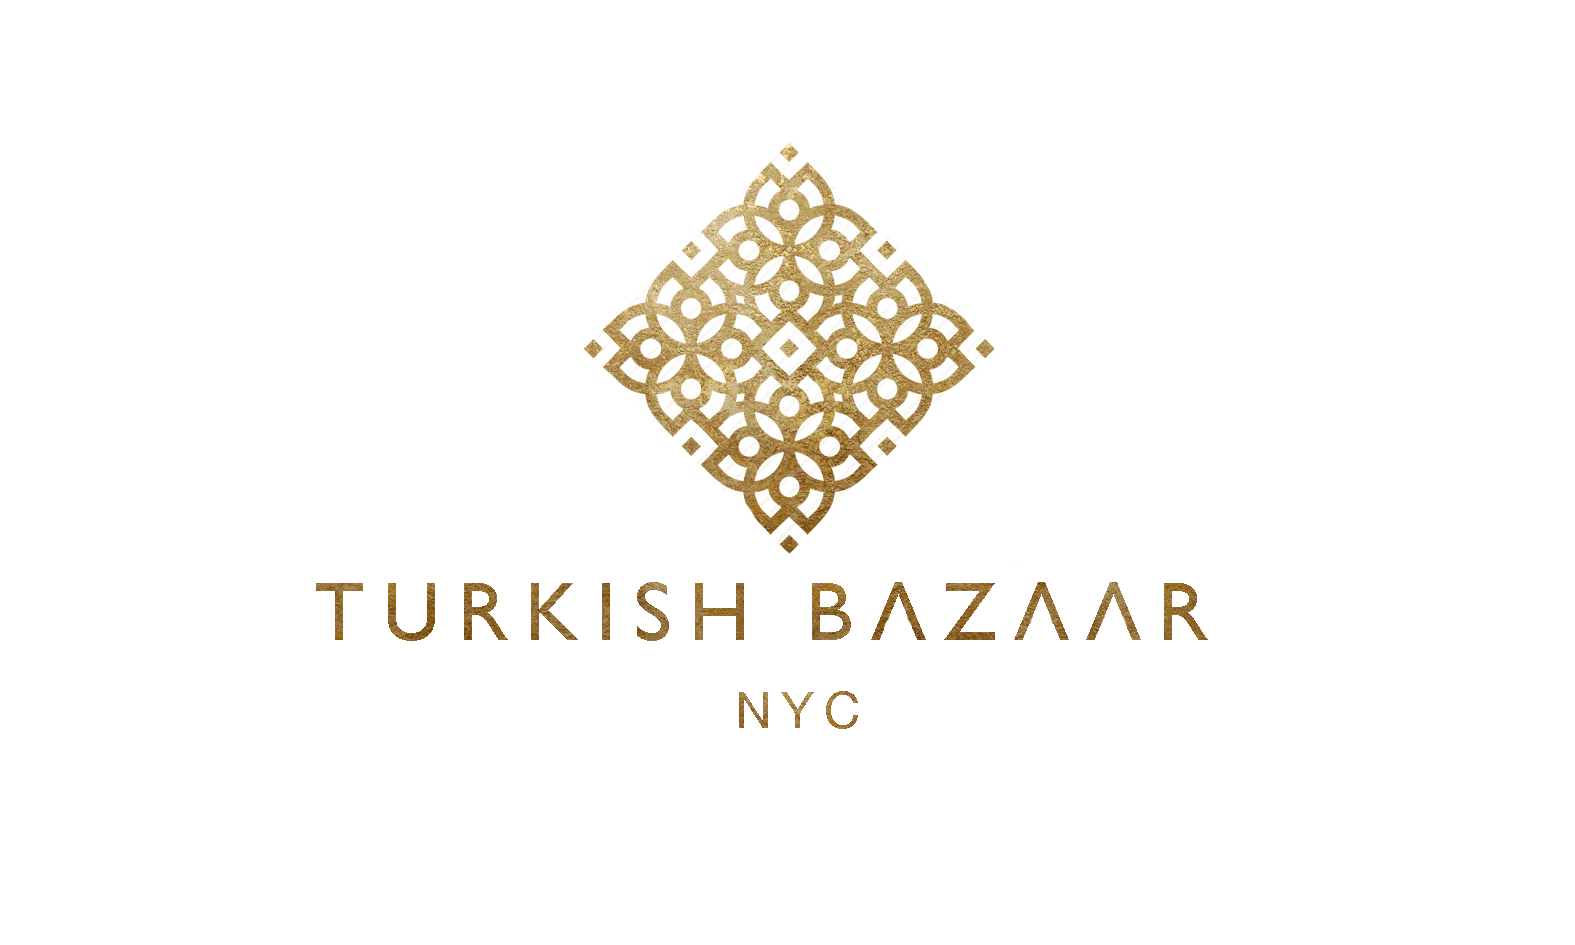 Turkish Bazaar NYC